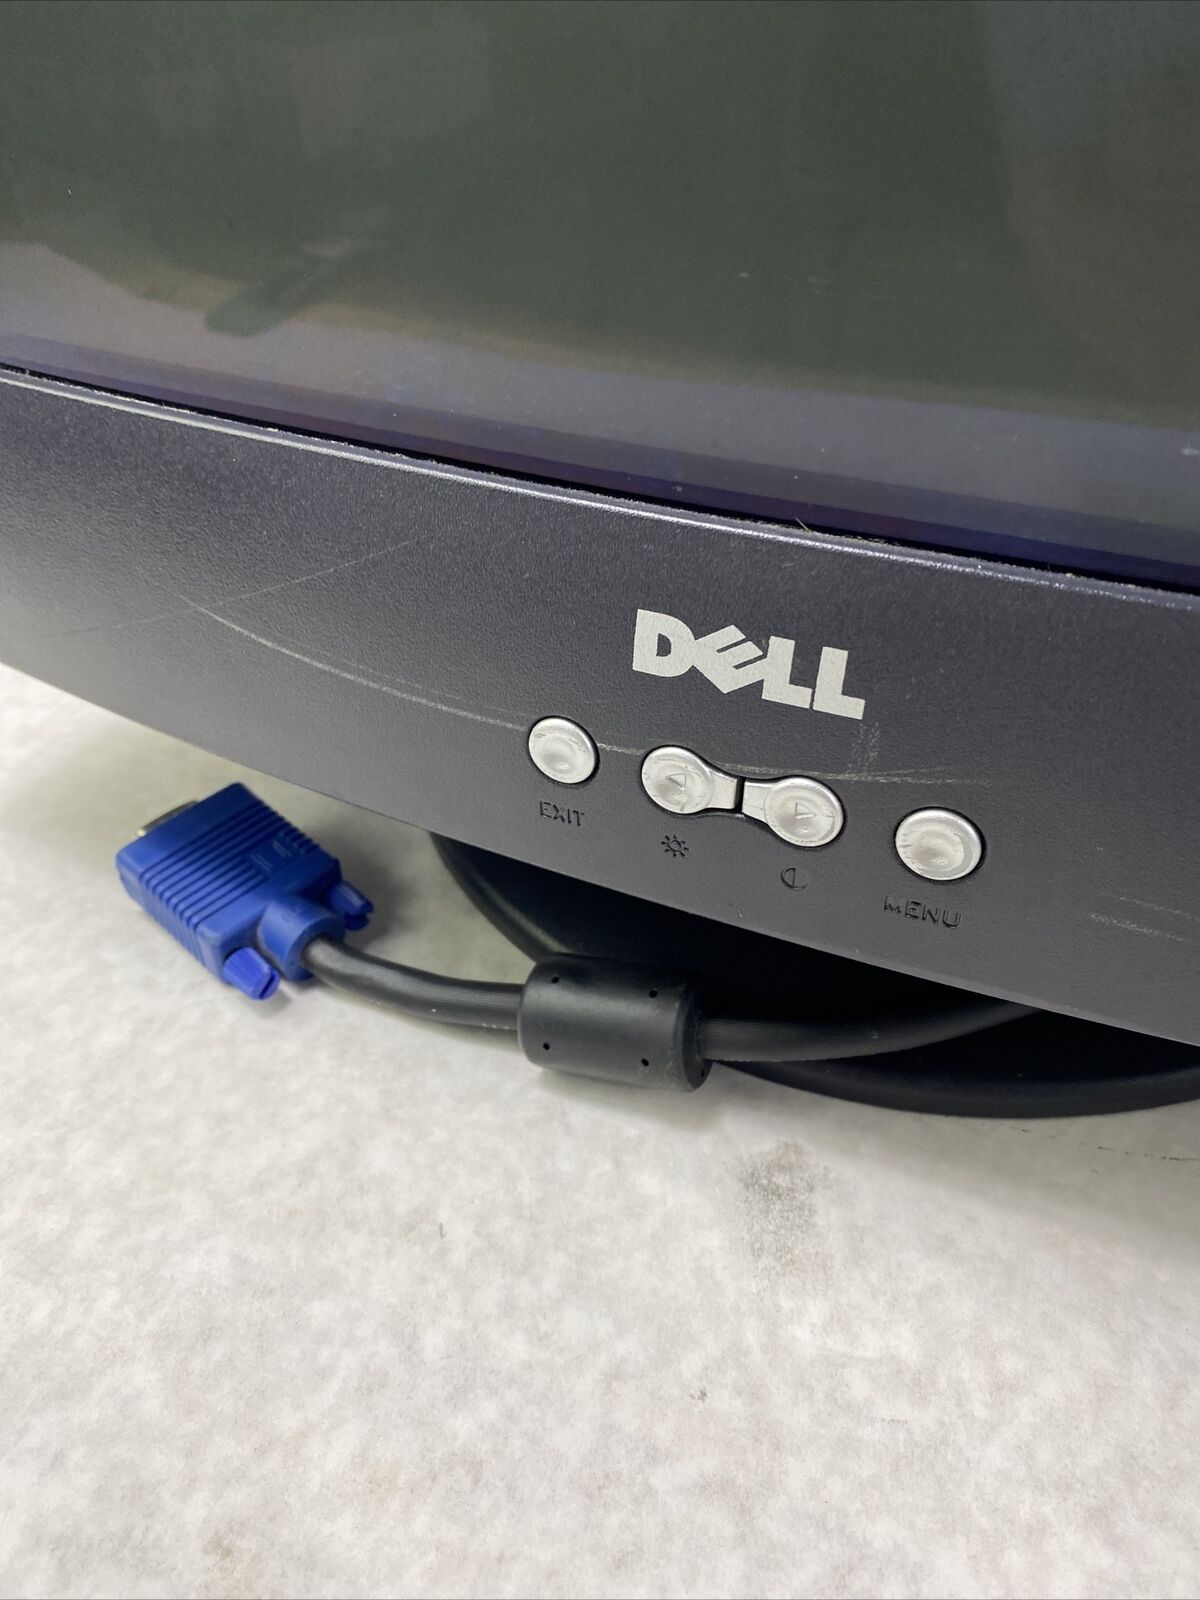 Dell 0P0151 17” CRT E773c VGA Monitor Retro Gaming 1024x768